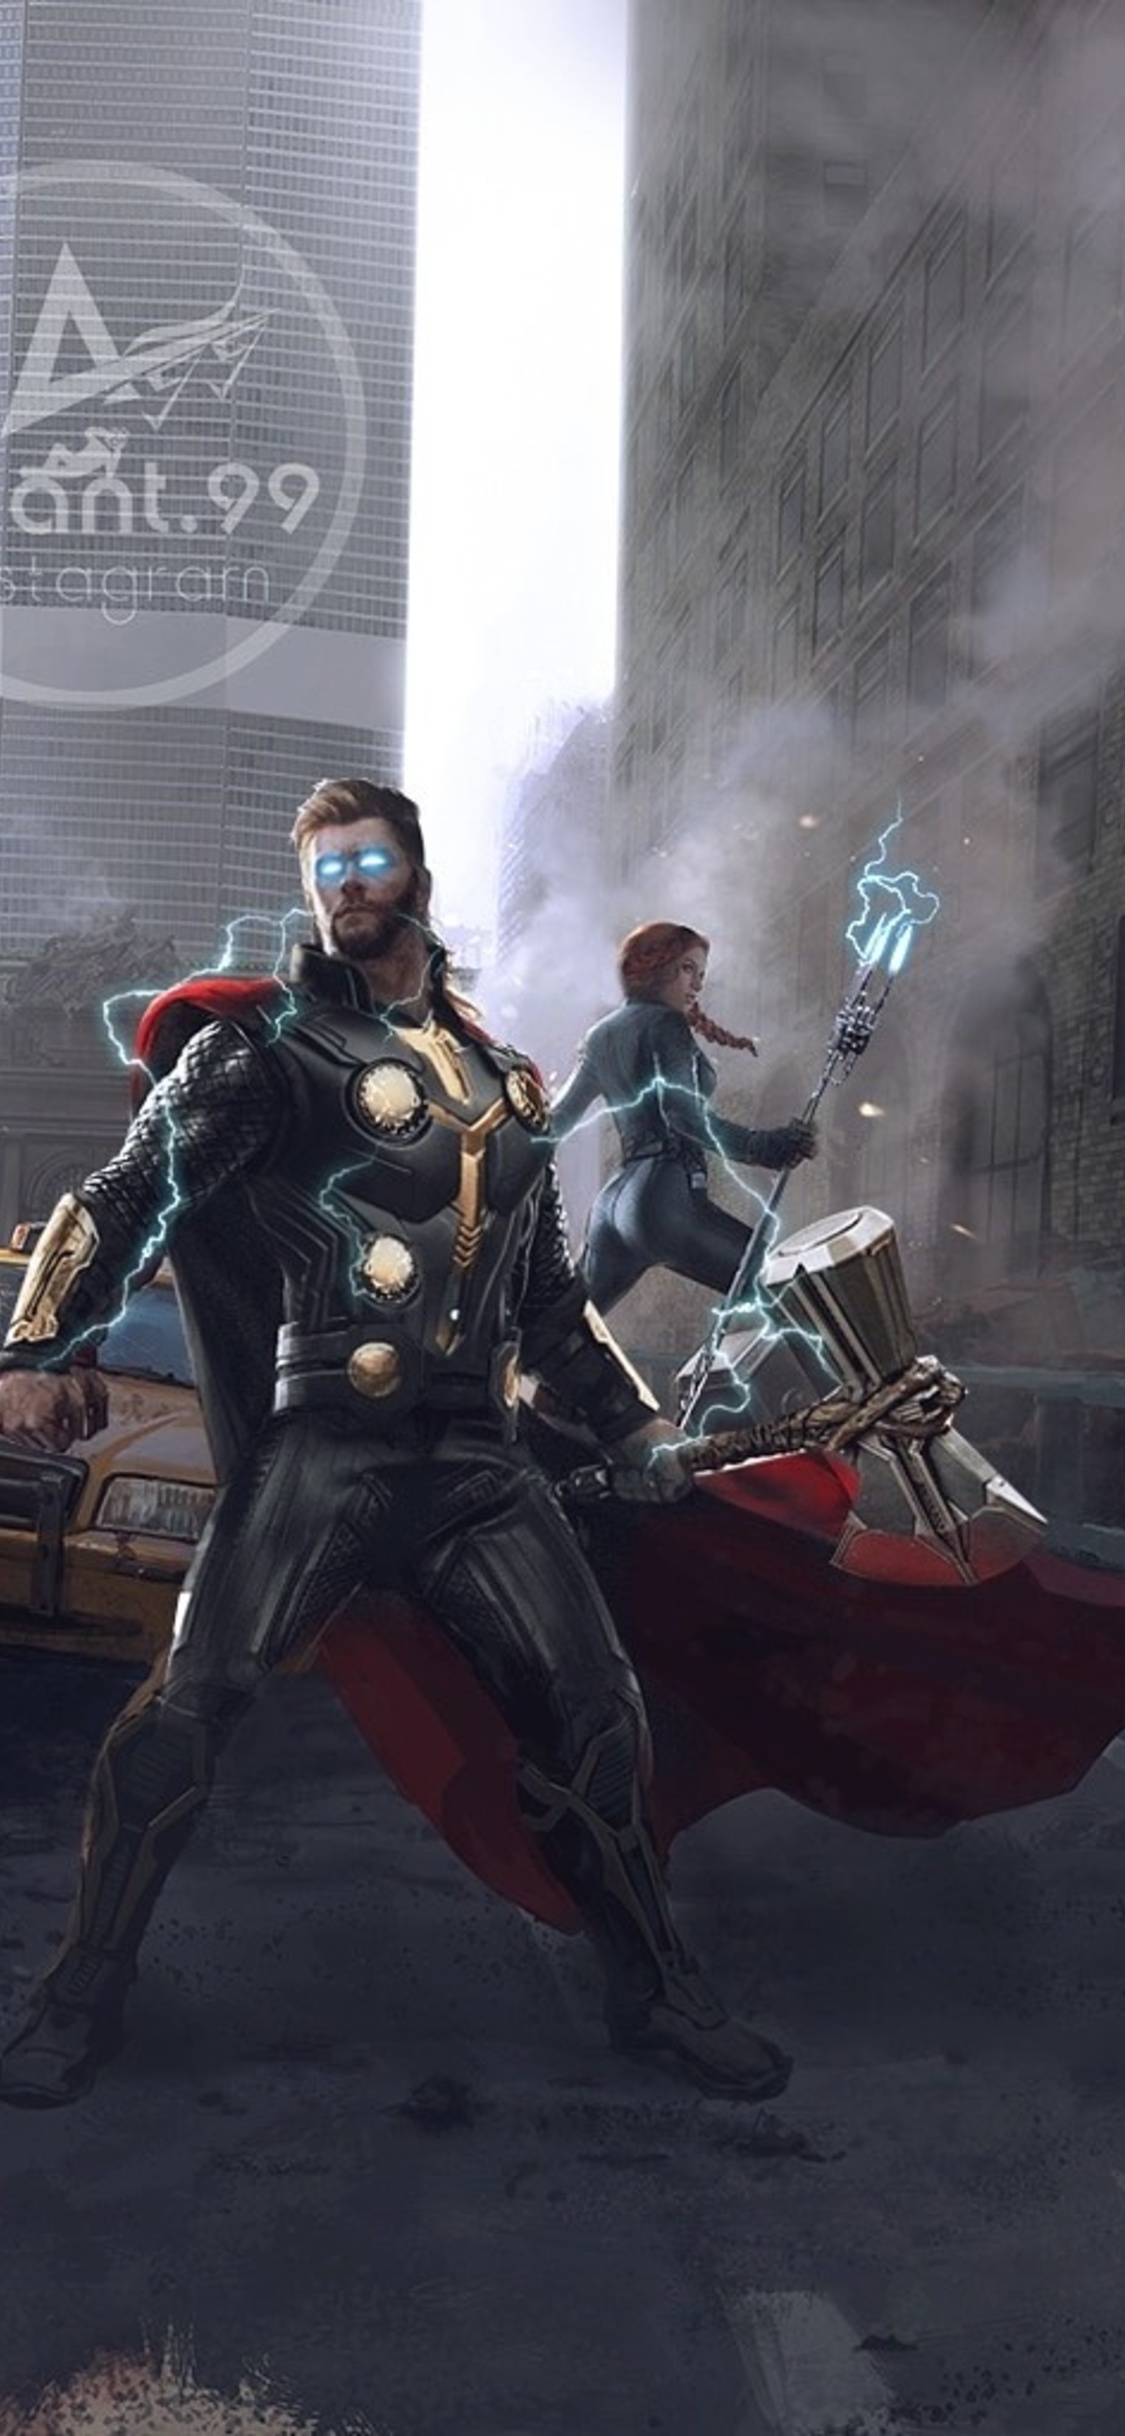 Avengers Endgame Fanart Image Wallpapers